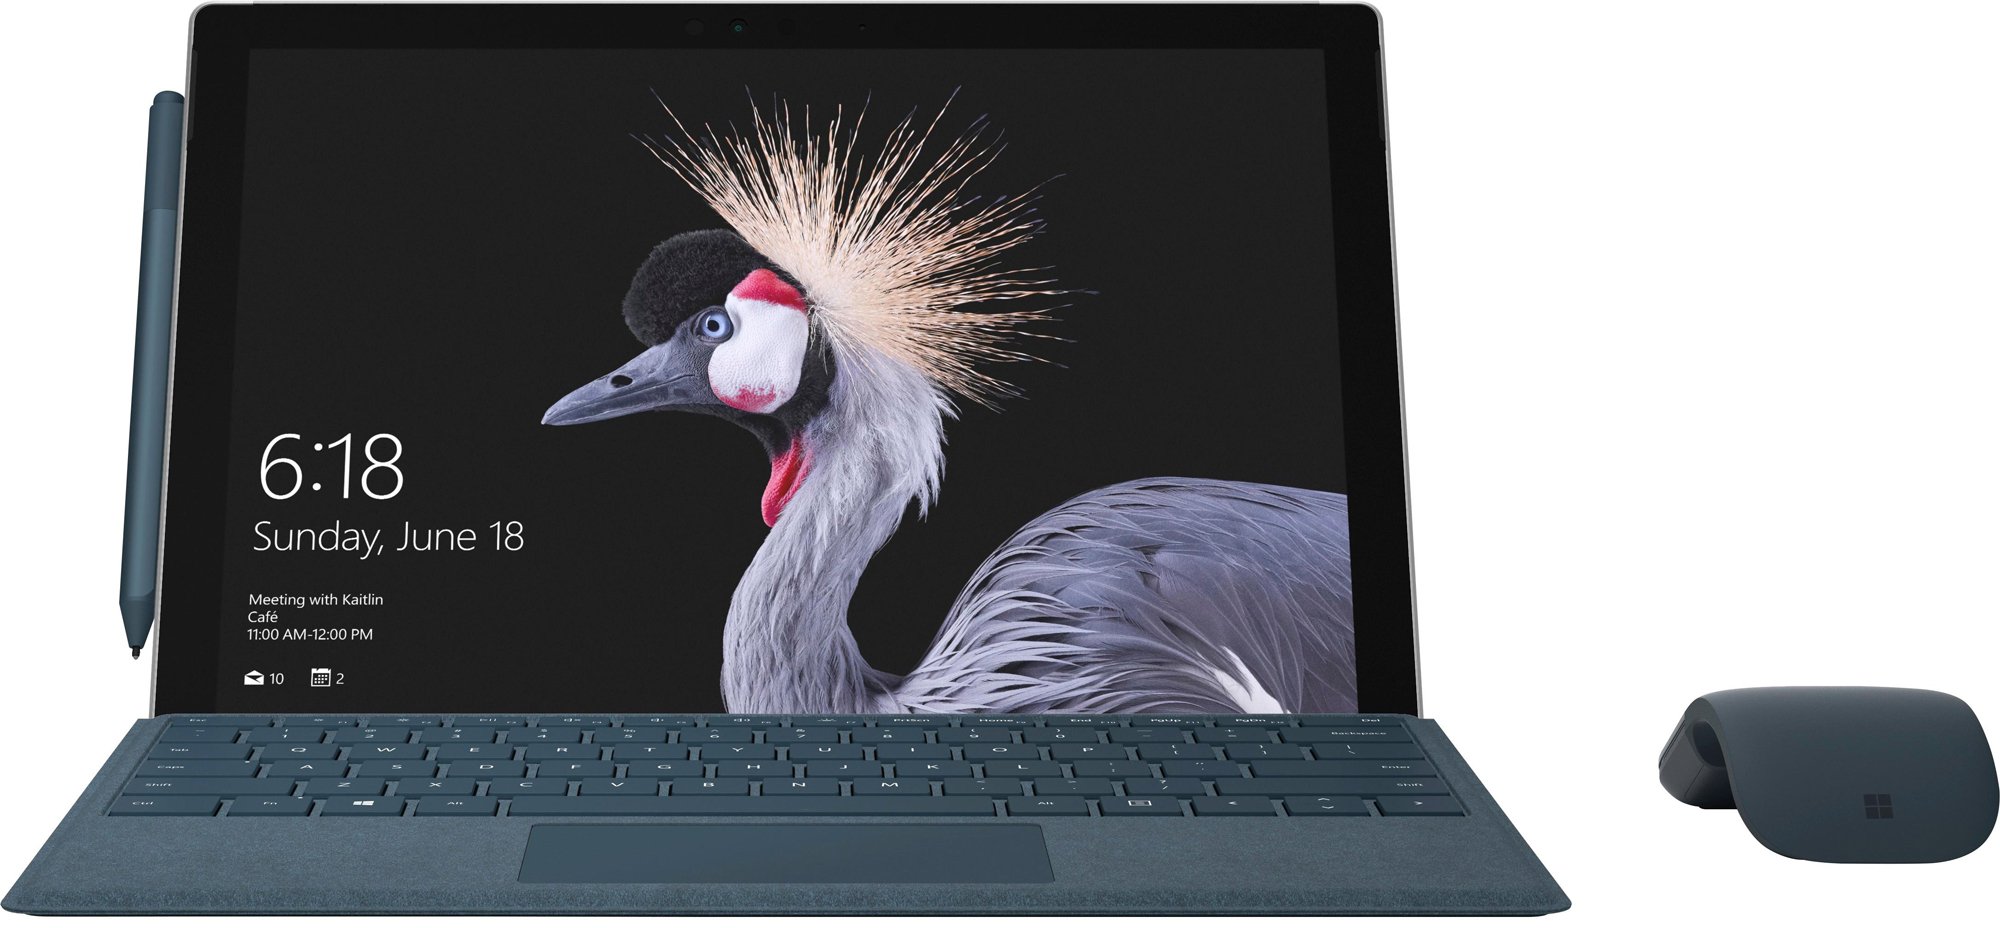 Immagine pubblicata in relazione al seguente contenuto: Un leak rivela il nuovo Surface Pro e il mouse Surface Arc di Microsoft | Nome immagine: news26370_Surface-Pro-2017_1.jpg